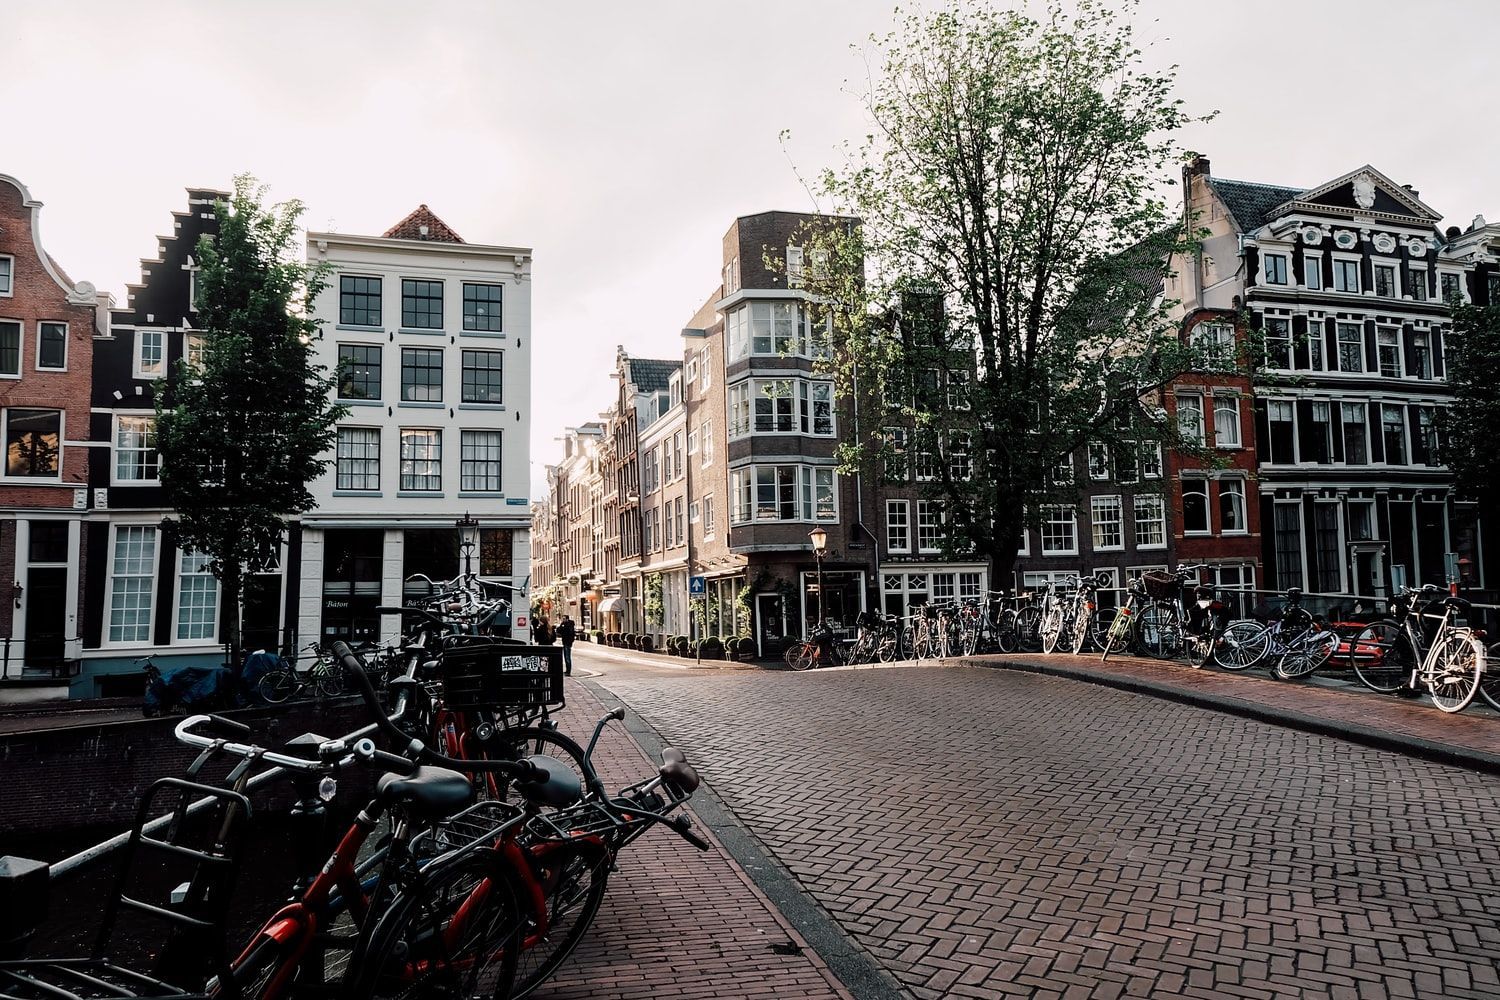 Уютно и просторно: в Амстердаме переделали старую школу в многоквартирный дом – фото